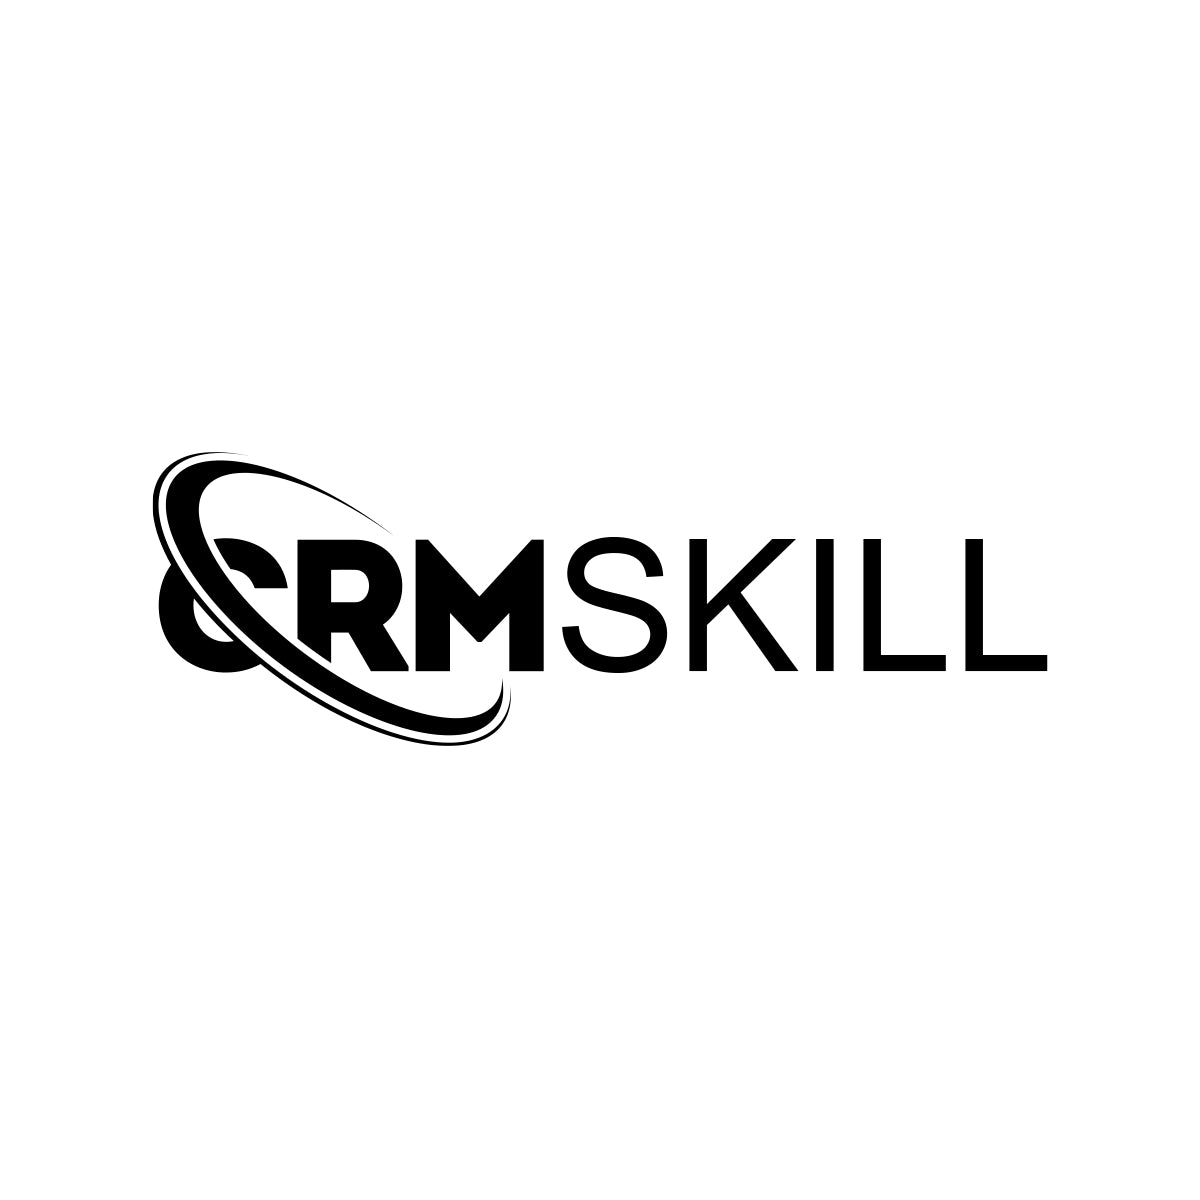 CRMSkill.com